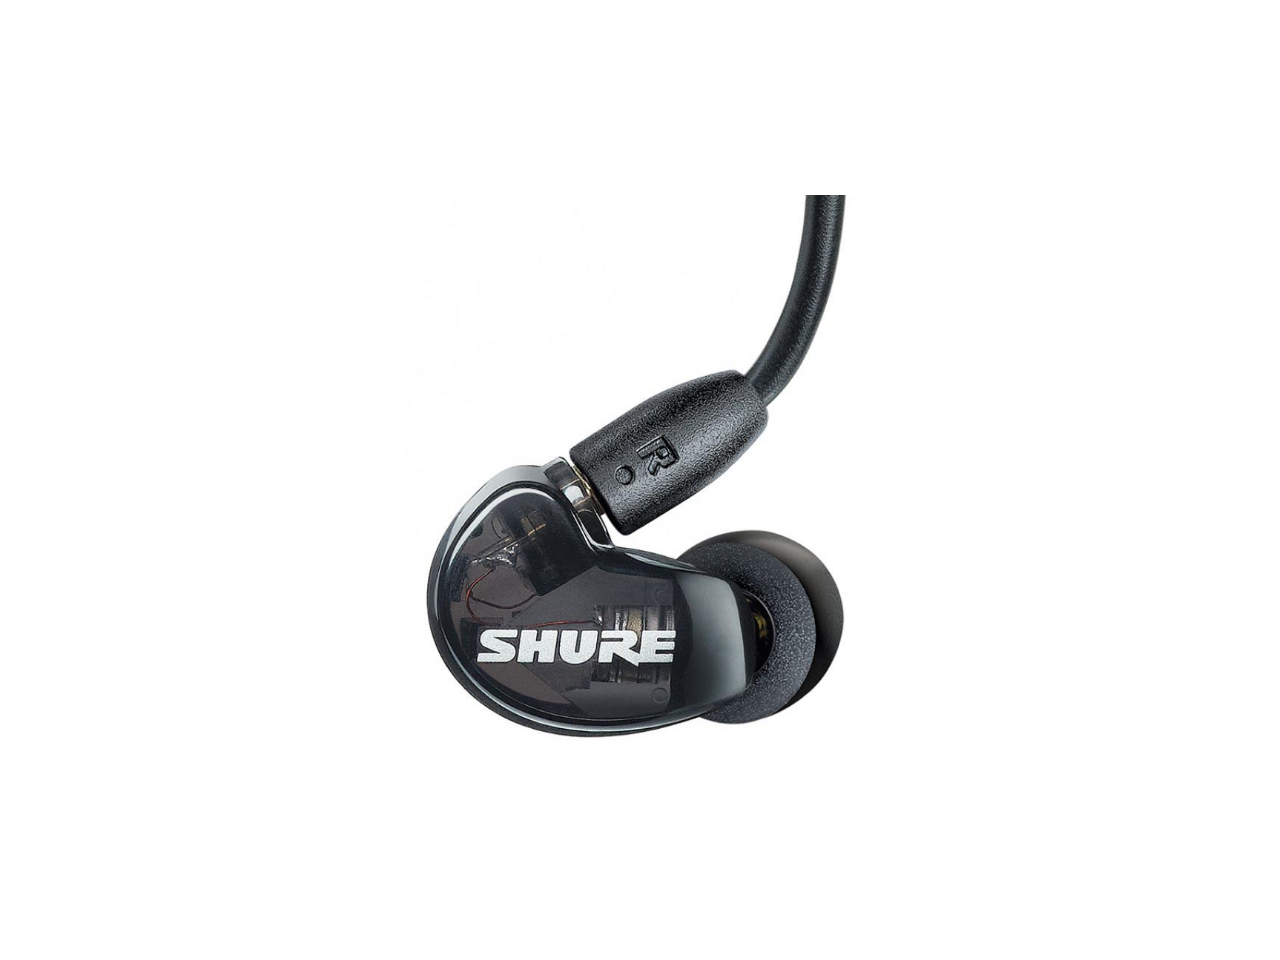 Shure AONIC 215 Pro True Wireless Earphones - Black $79